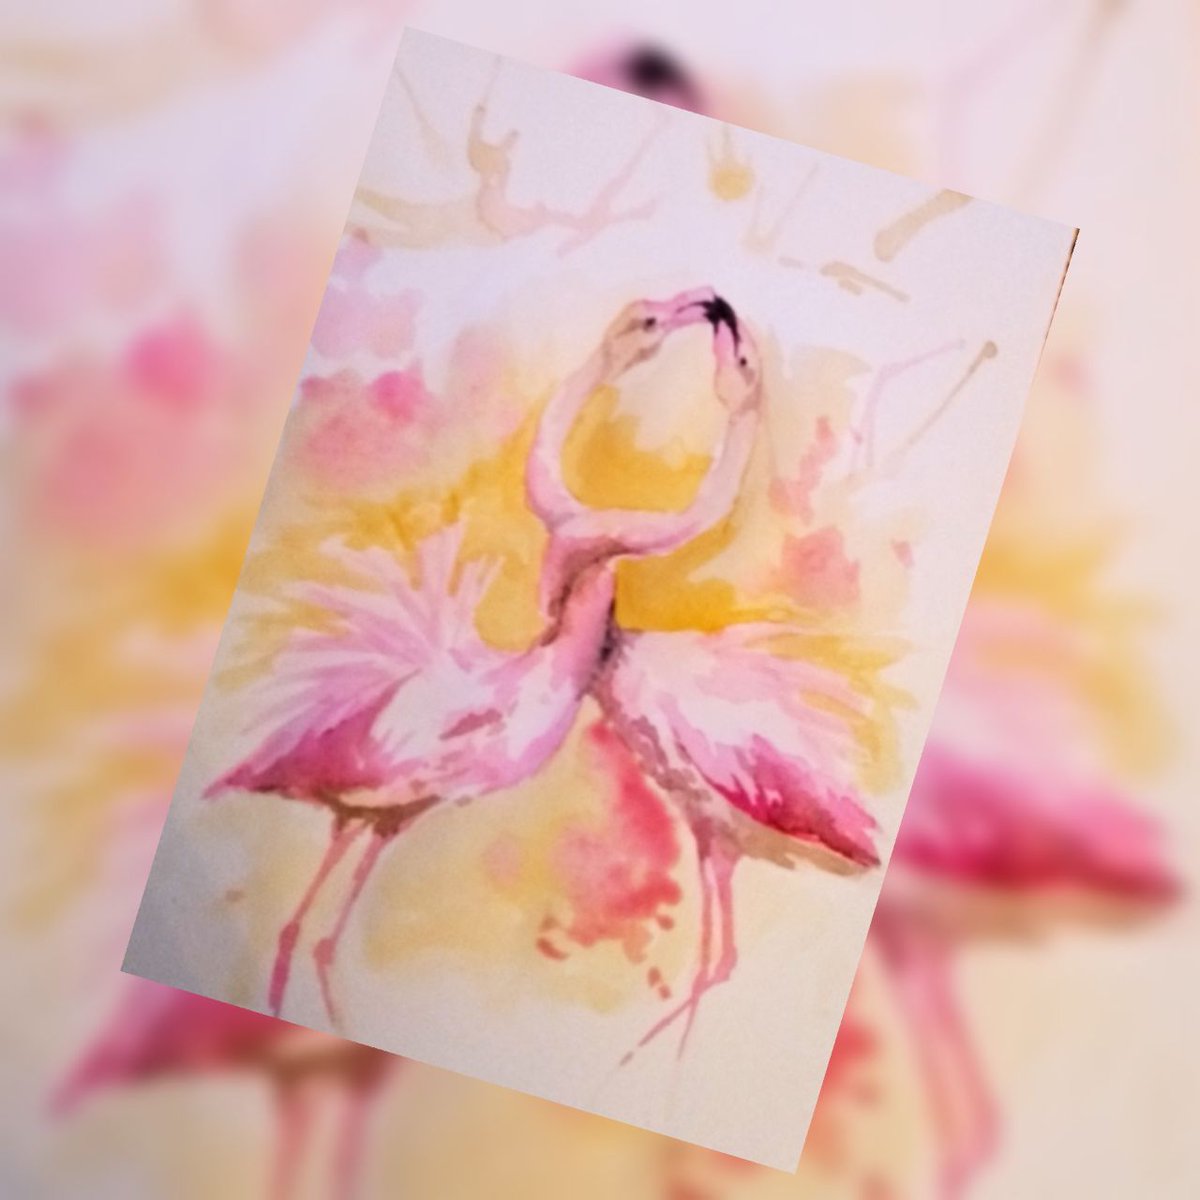 A5, watercolor

#watercolor #watercolorbirdspainting #акварельныйскетч #акварель #aquarelle